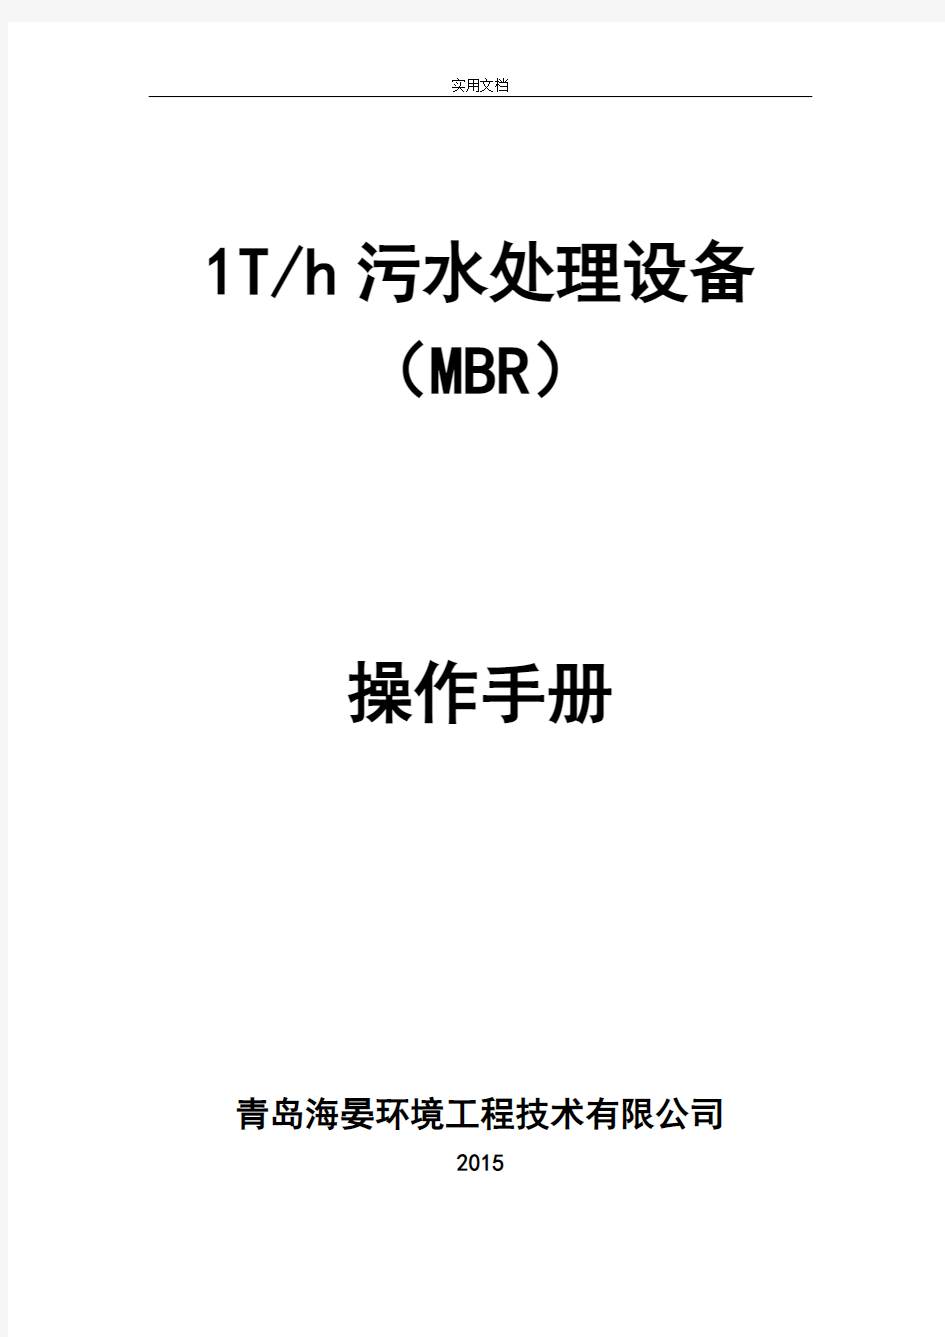 MBR一体化设备操作手册簿例范本